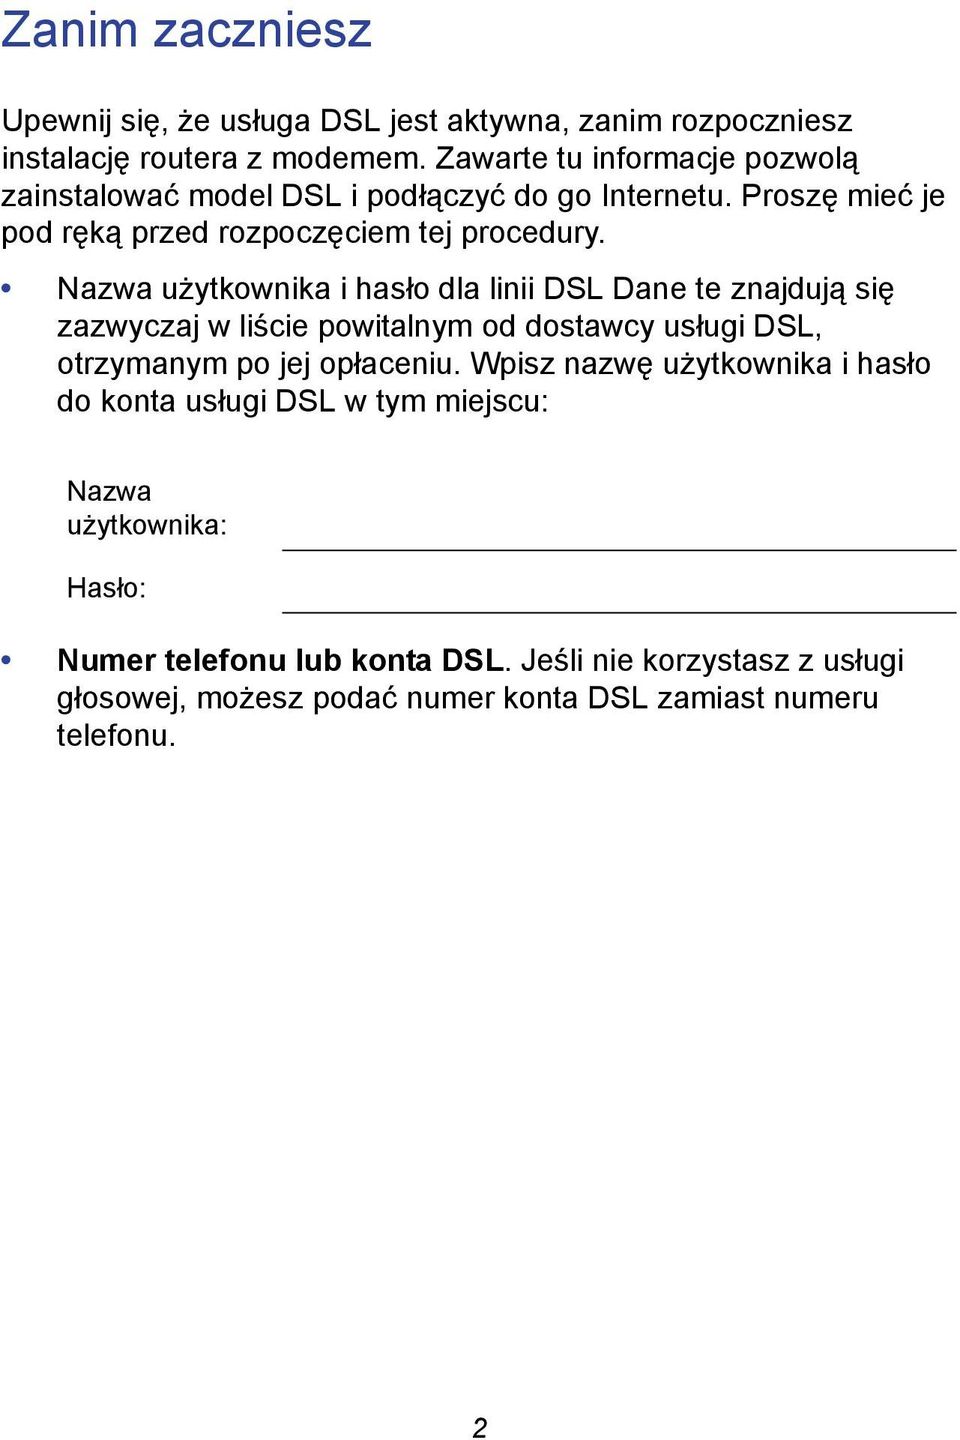 Nazwa użytkownika i hasło dla linii DSL Dane te znajdują się zazwyczaj w liście powitalnym od dostawcy usługi DSL, otrzymanym po jej opłaceniu.